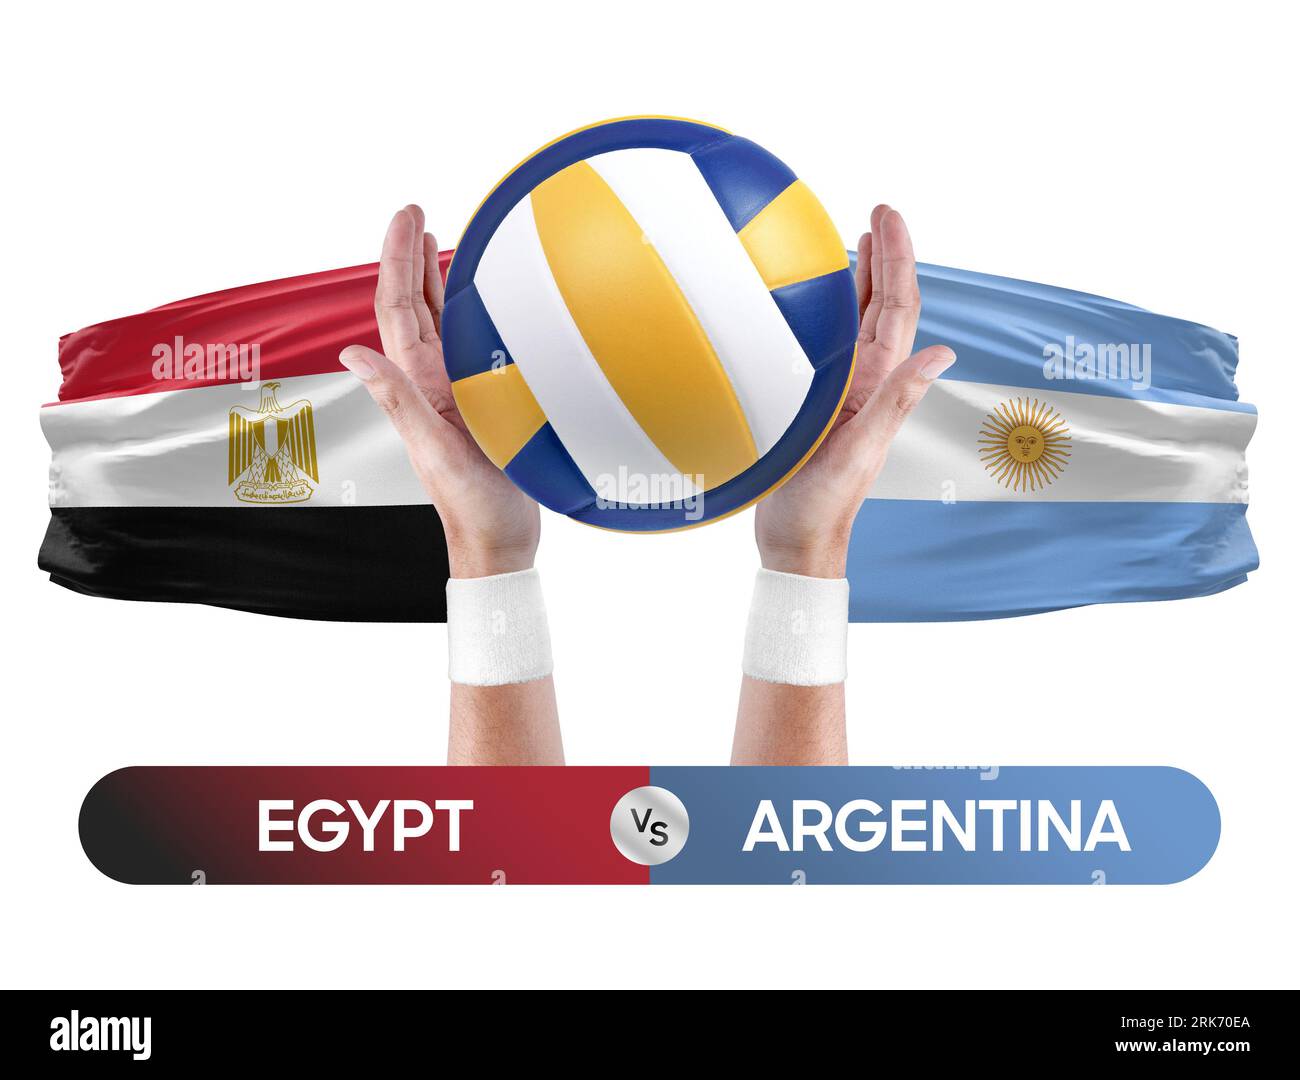 Ägypten gegen Argentinien Nationalmannschaften Volleyball Volleyball-Volleyball-Spiel-Wettkampf-Konzept. Stockfoto